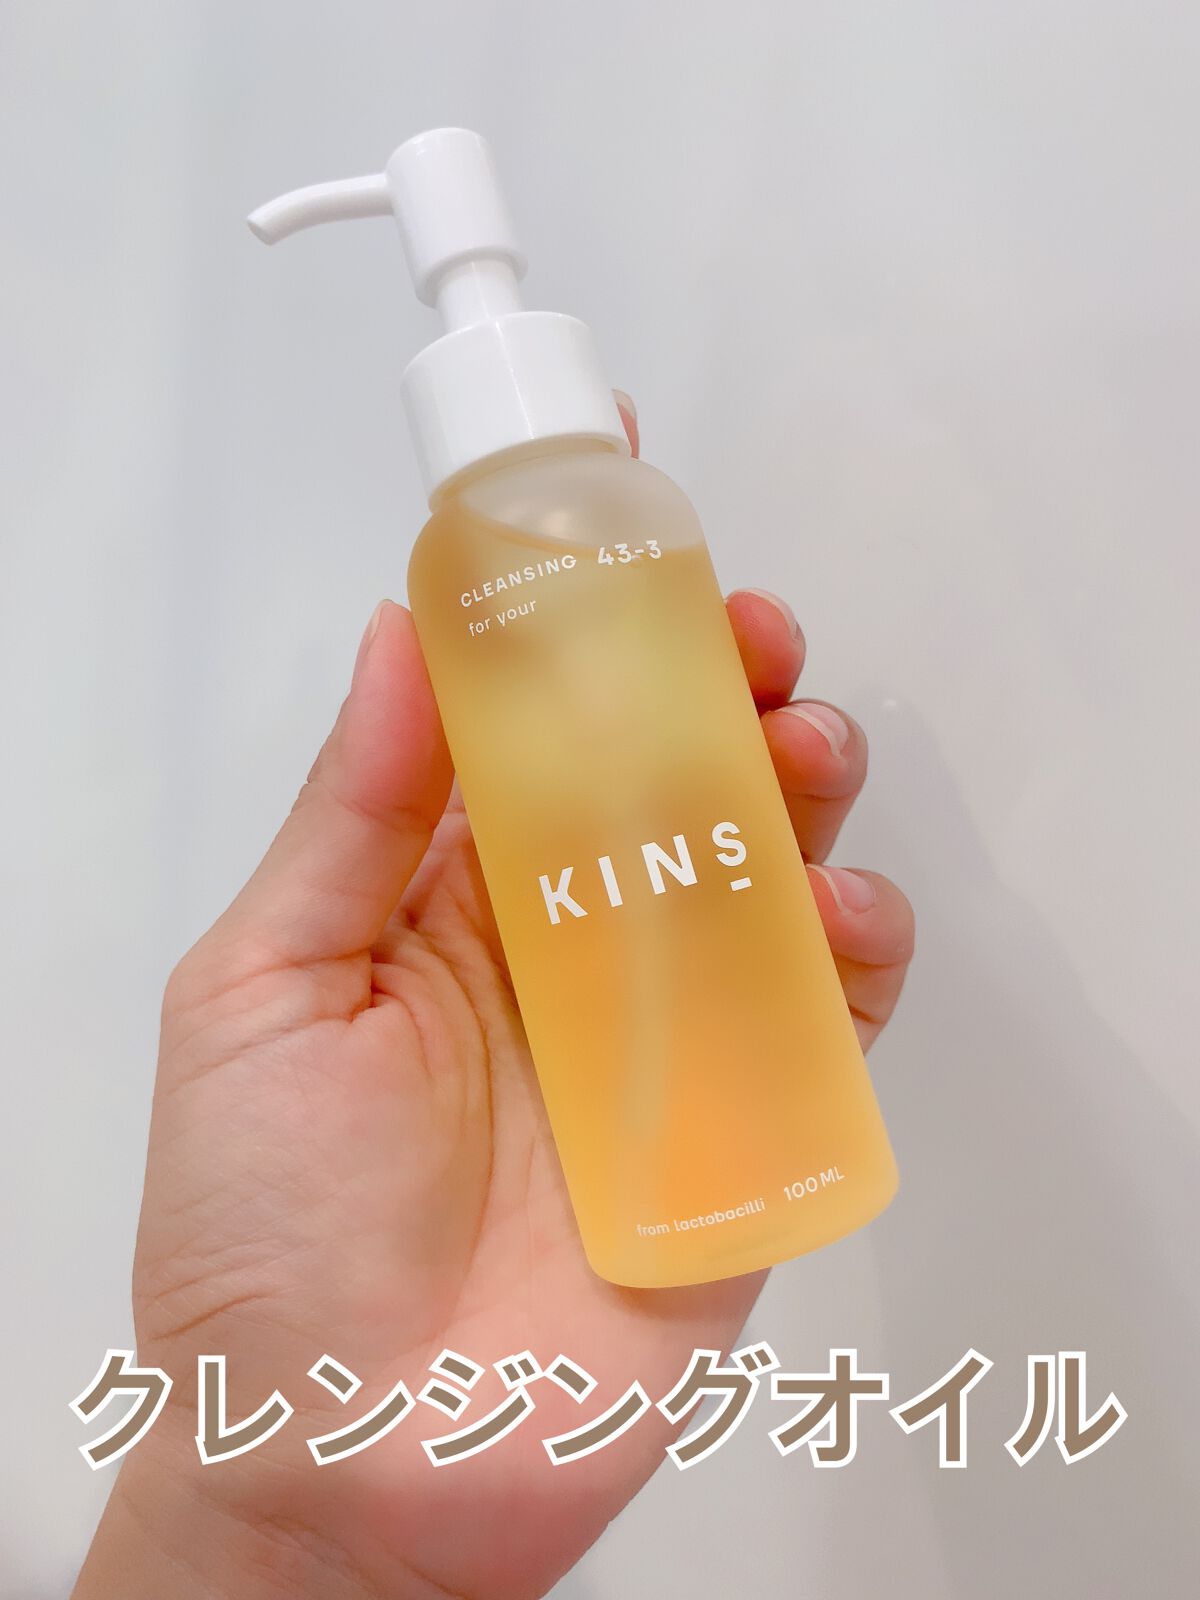 KINSブースター+セーラムリペア+クレンジングオイル 美容液 スキンケア/基礎化粧品 コスメ・香水・美容 メリット